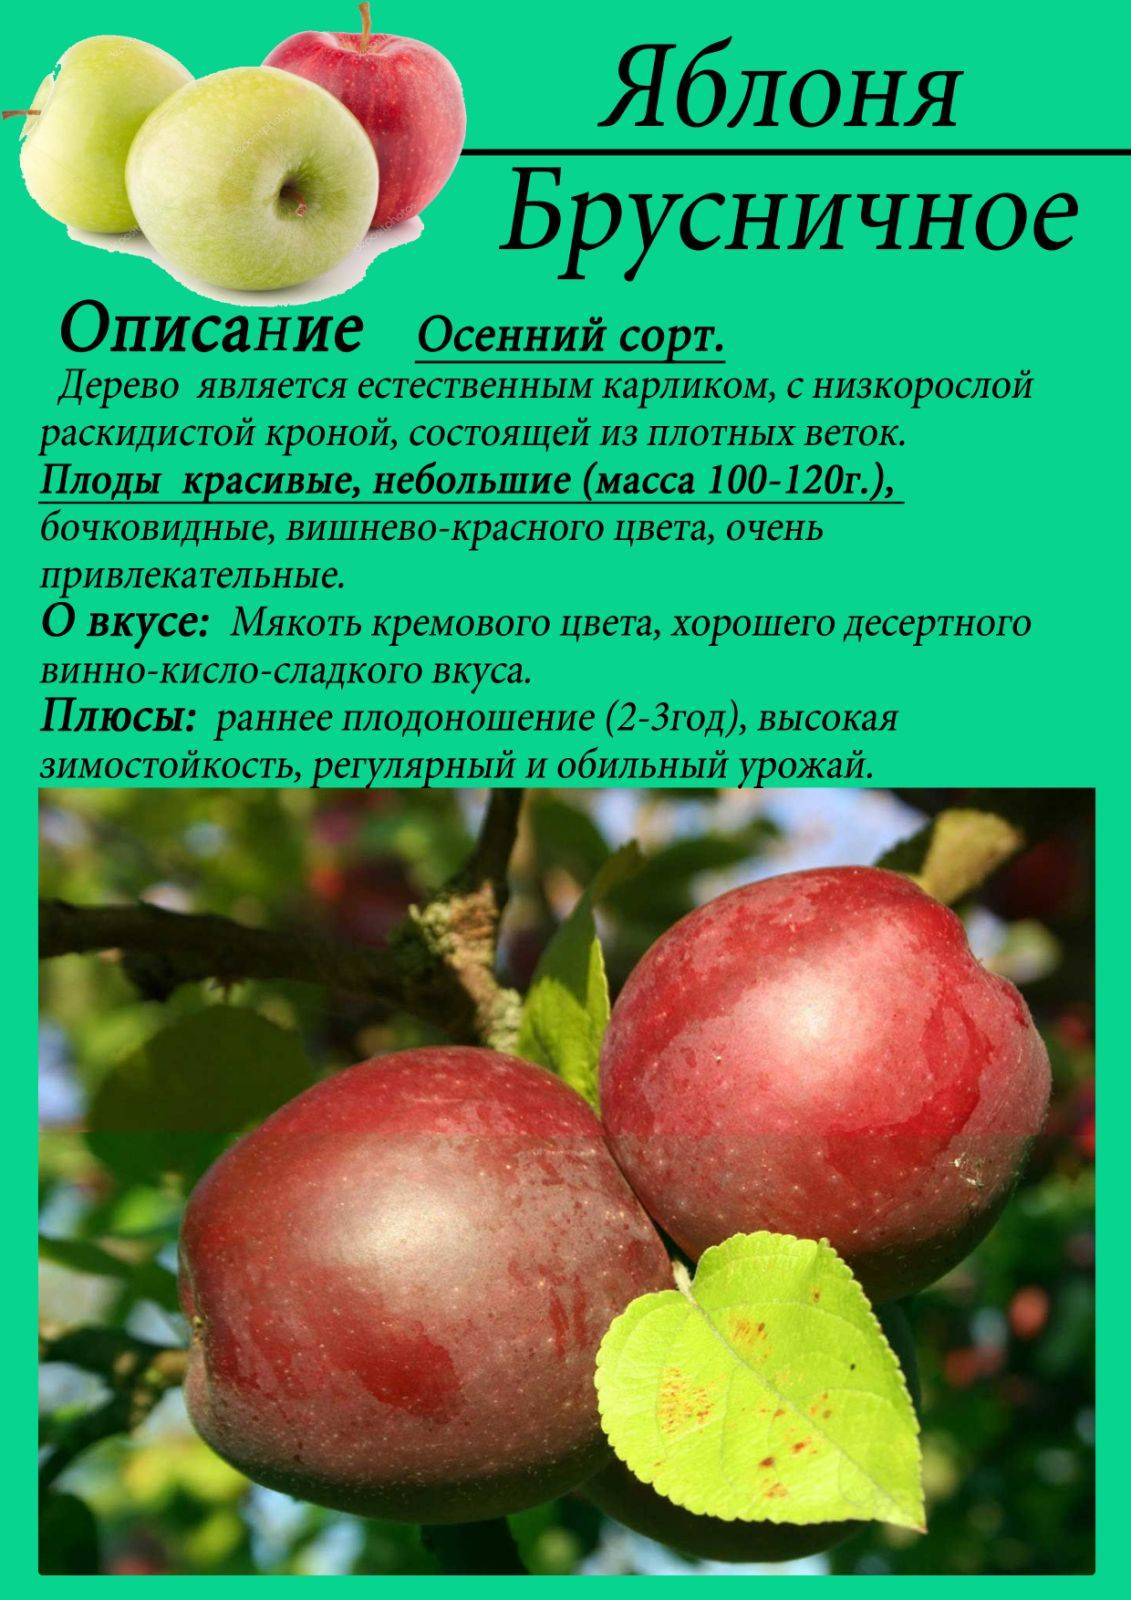 Сорт яблони елена, описание, характеристика и отзывы, а также особенности выращивания данного сорта